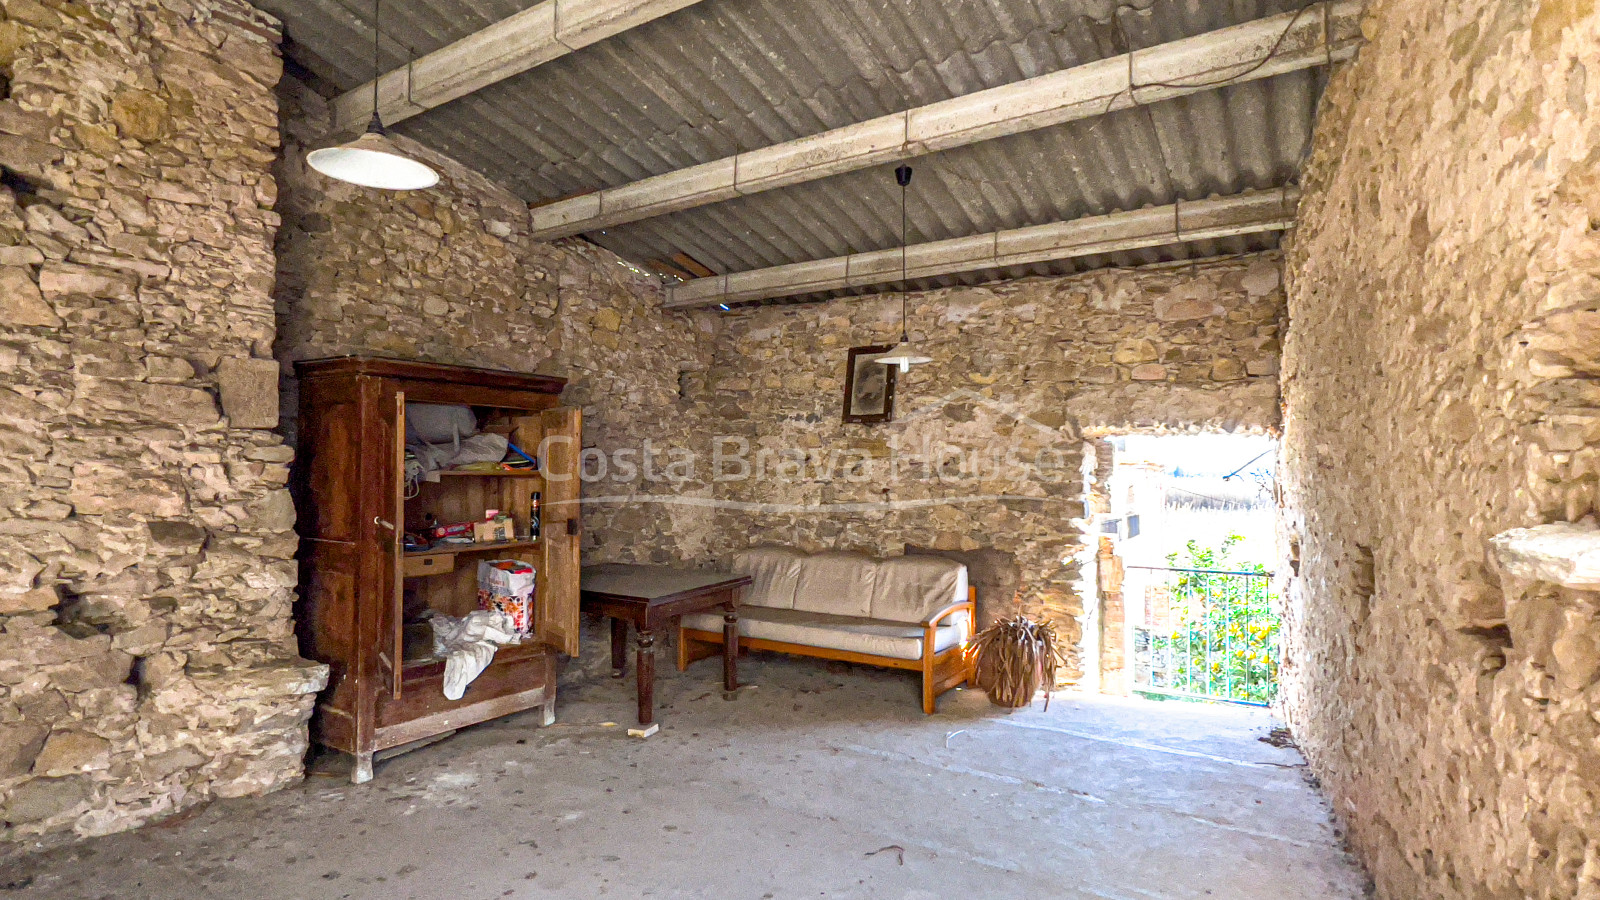 Casa de pedra en venda a Gualta, amb pati interior i moltes possibilitats d´aprofitament